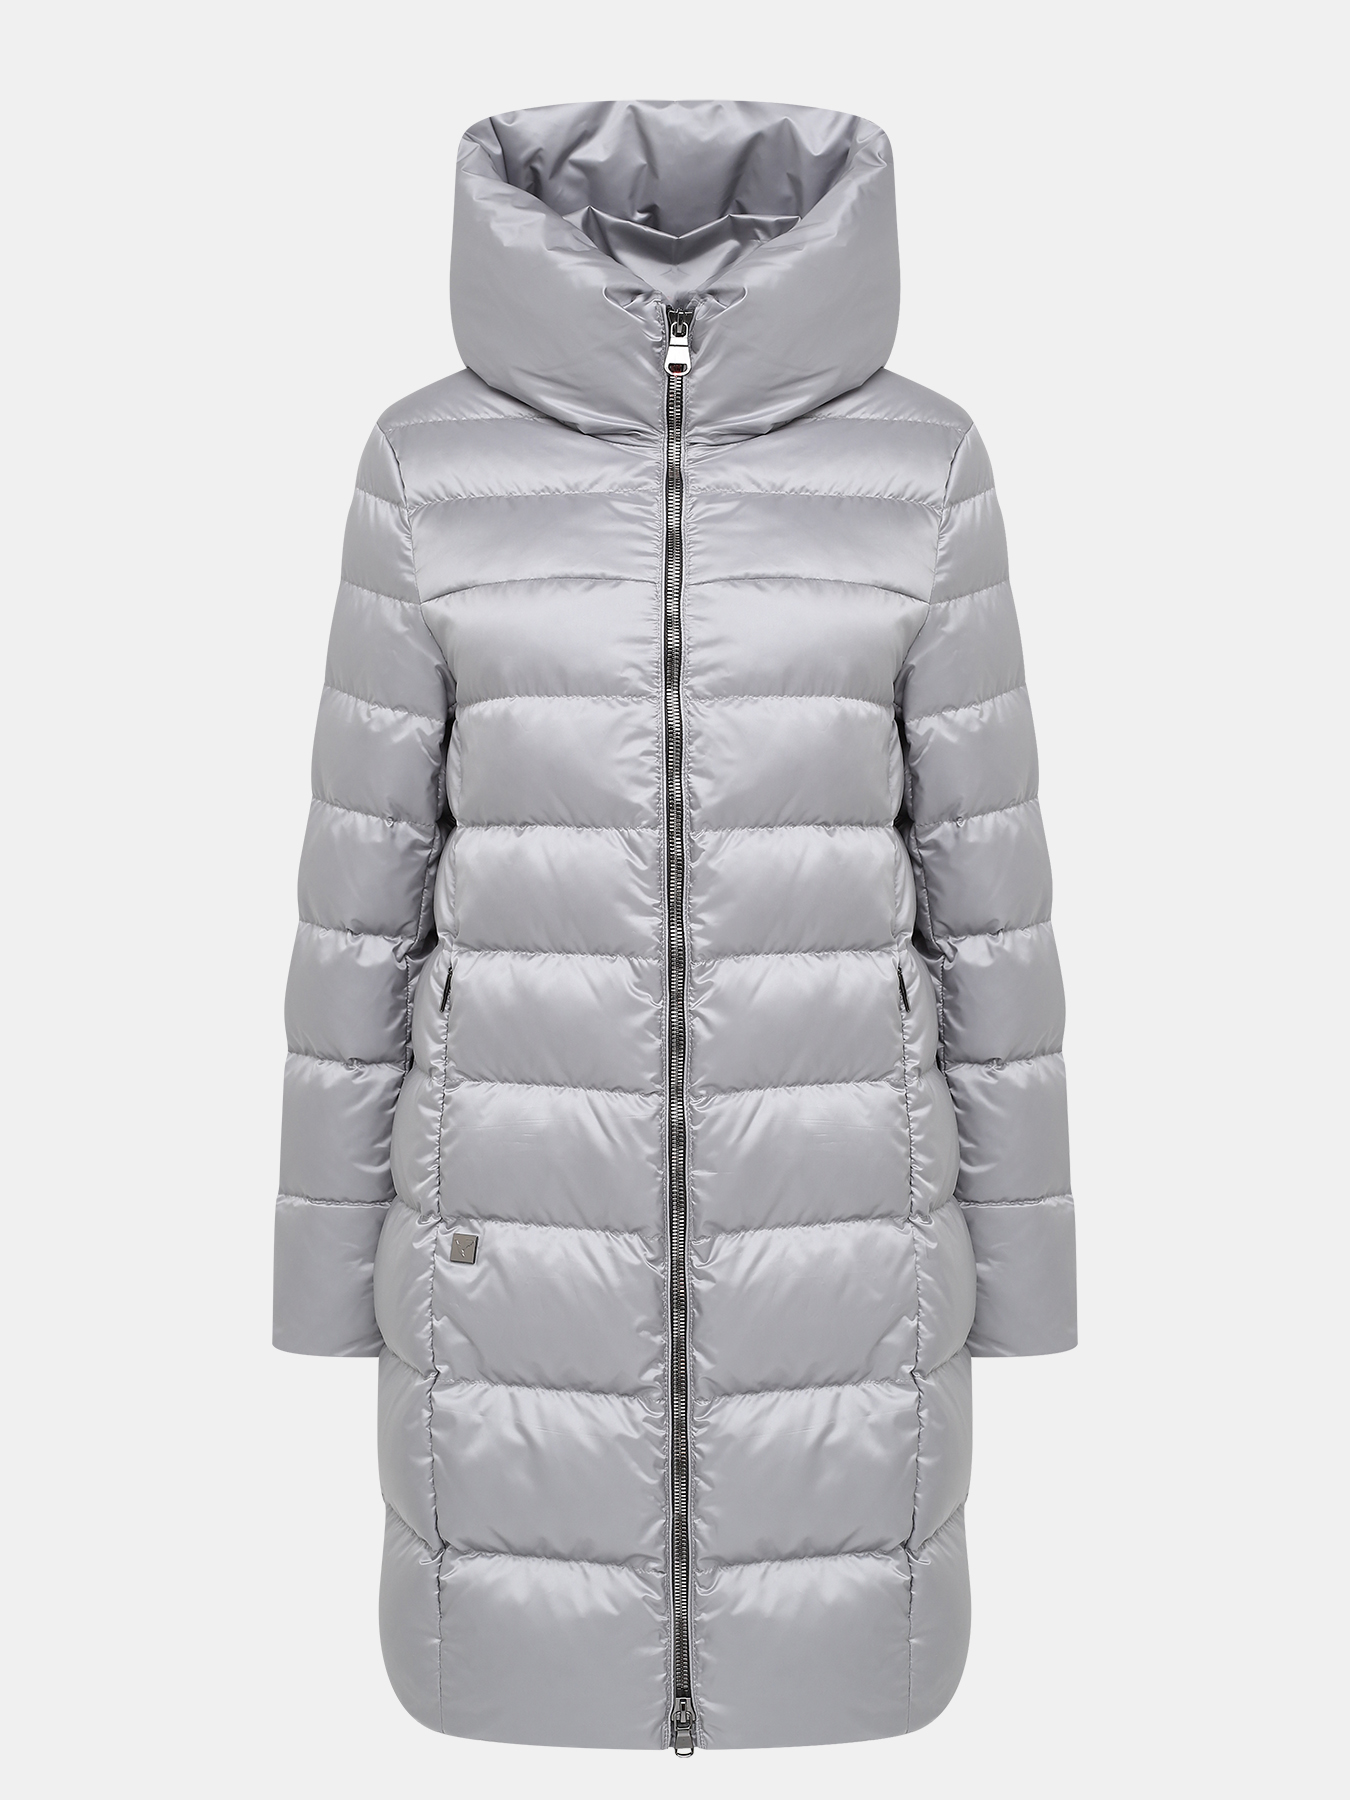 Пальто зимнее AVI 433630-020, цвет серый, размер 44